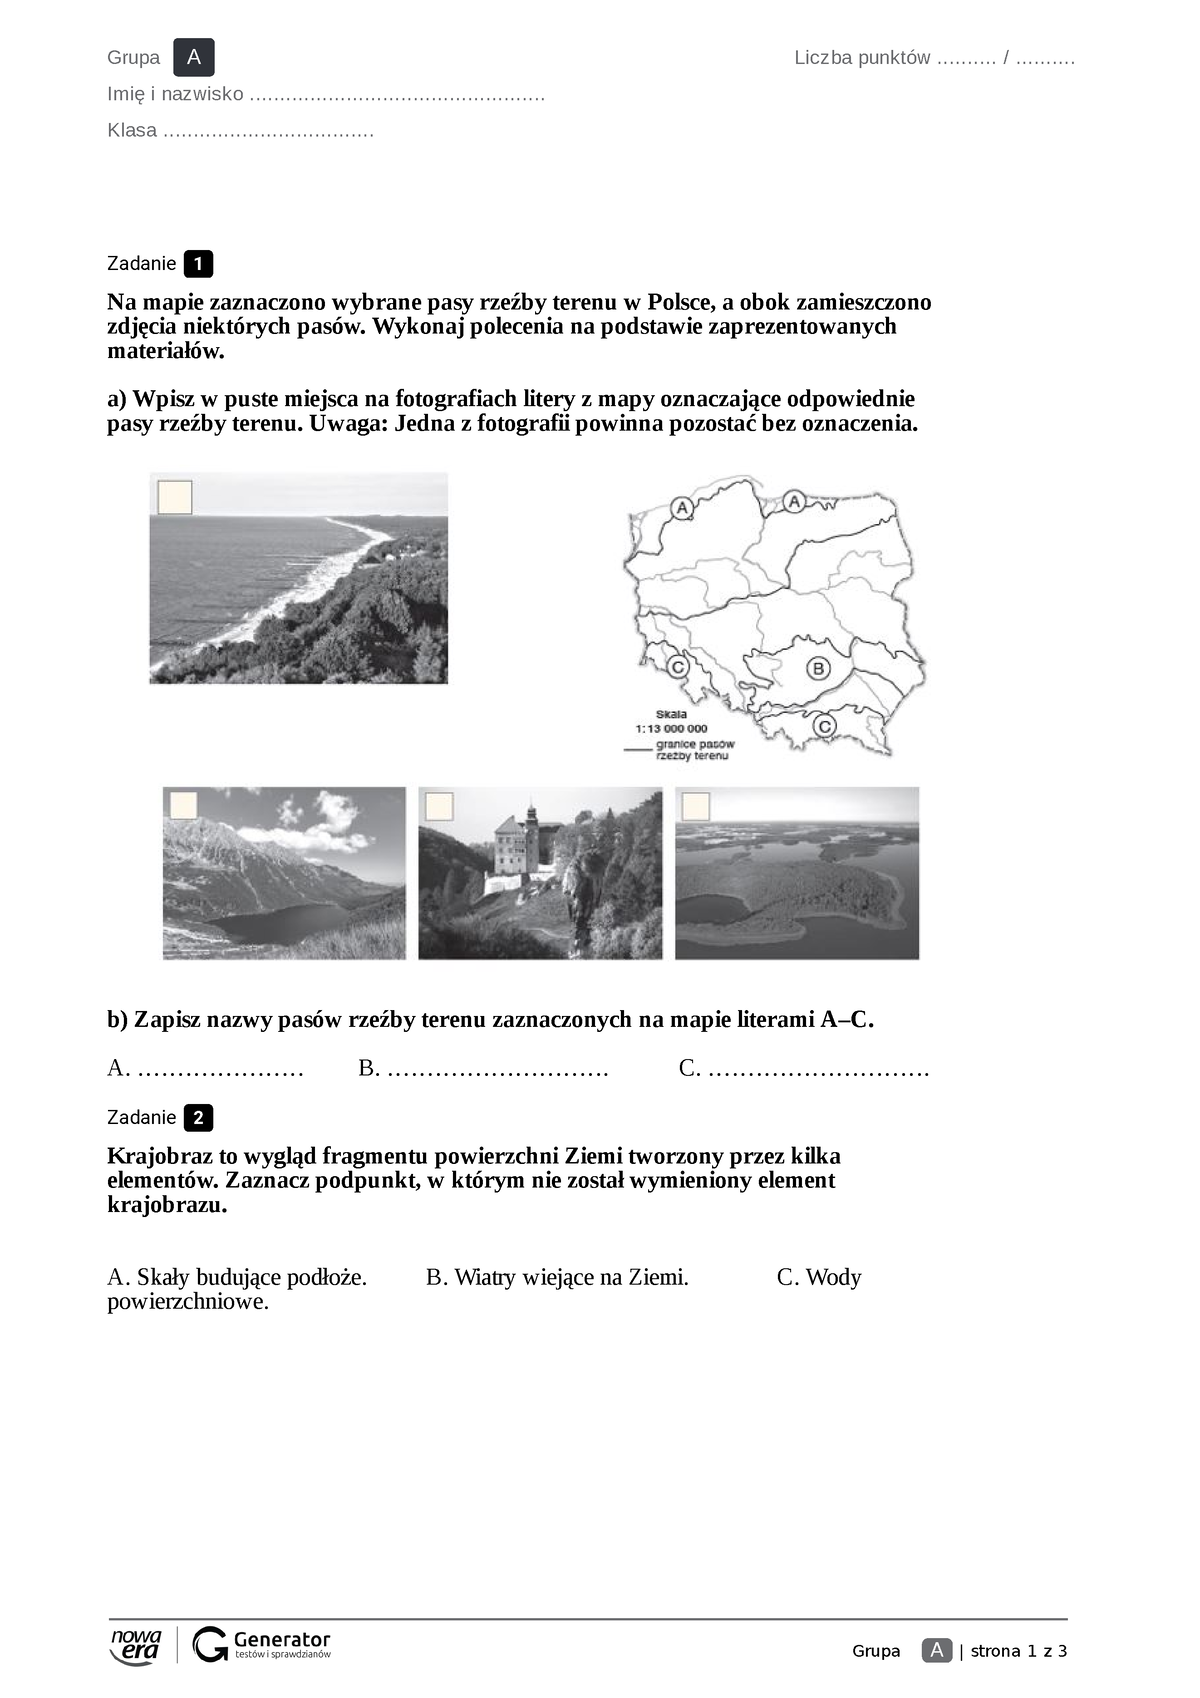 Sprawdzian Z Geografi Klasa 5 Krajobrazy Polski część 1-Test z ukryta punktacja - Grupa A | strona 1